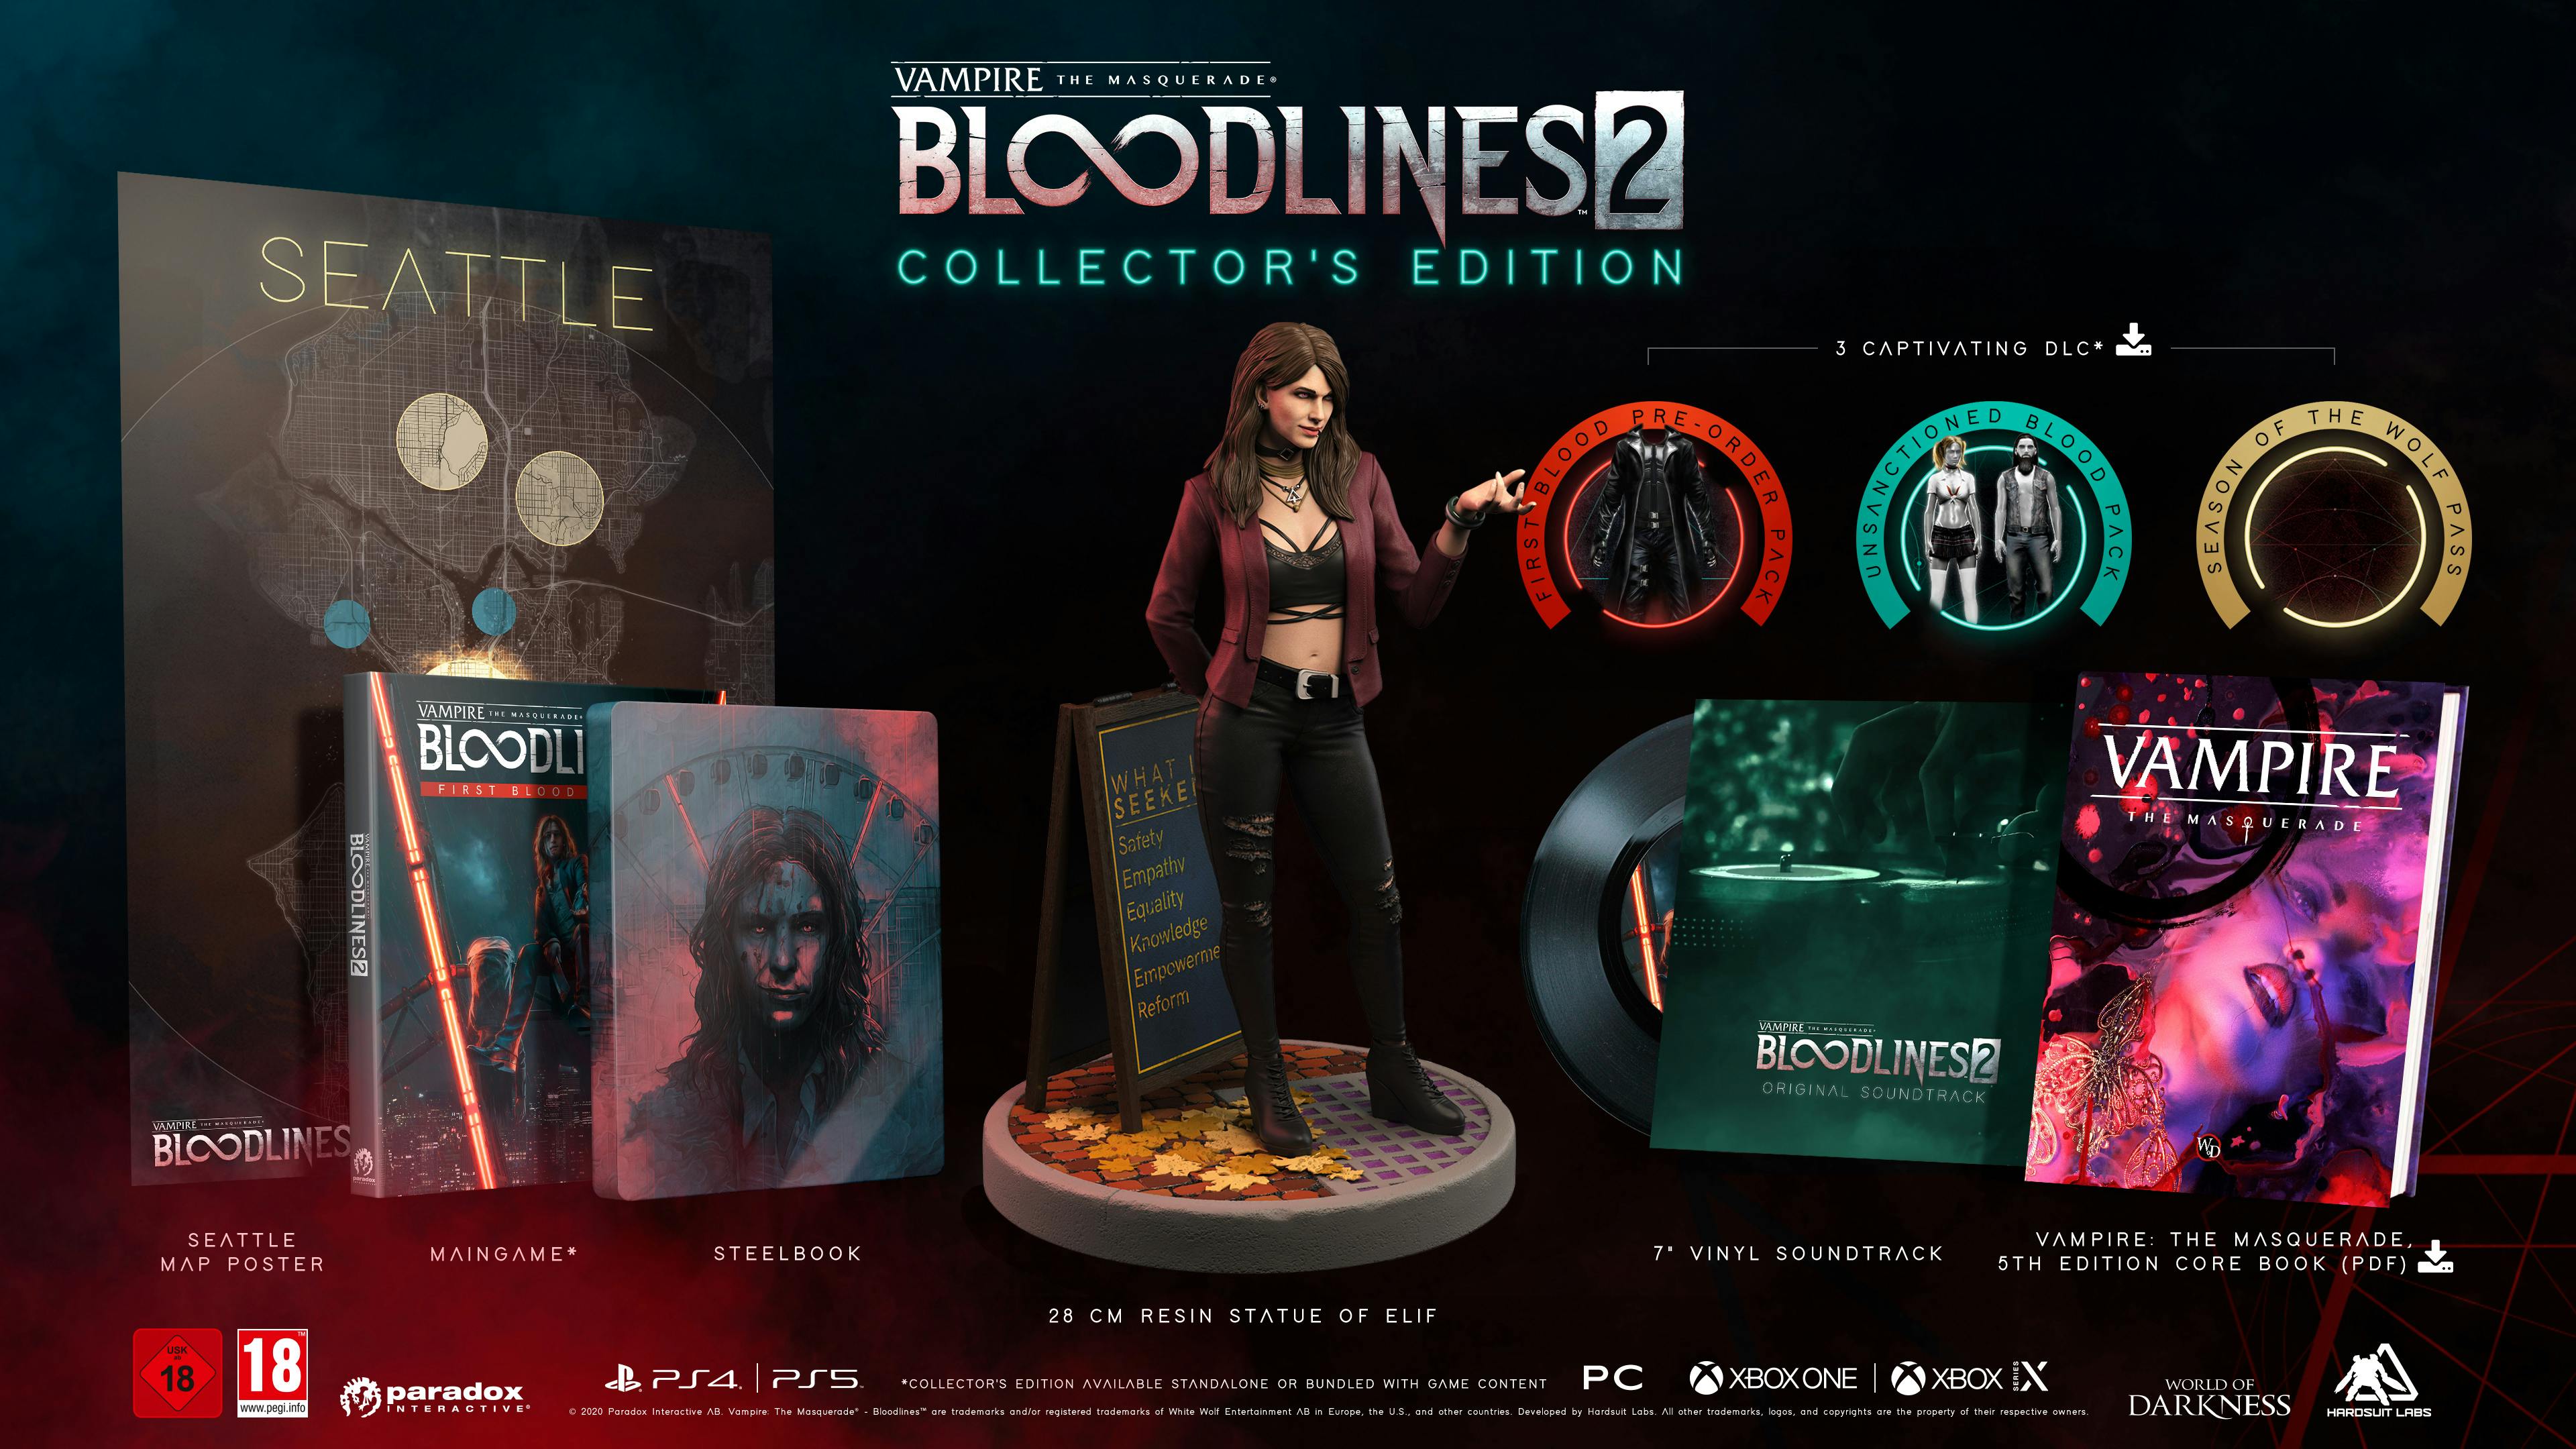 L'édition collector de Vampire: the Masquerade - Bloodlines 2 comportait de nombreux objets de collection physiques, qui sont tous remboursés aux propriétaires actuels.